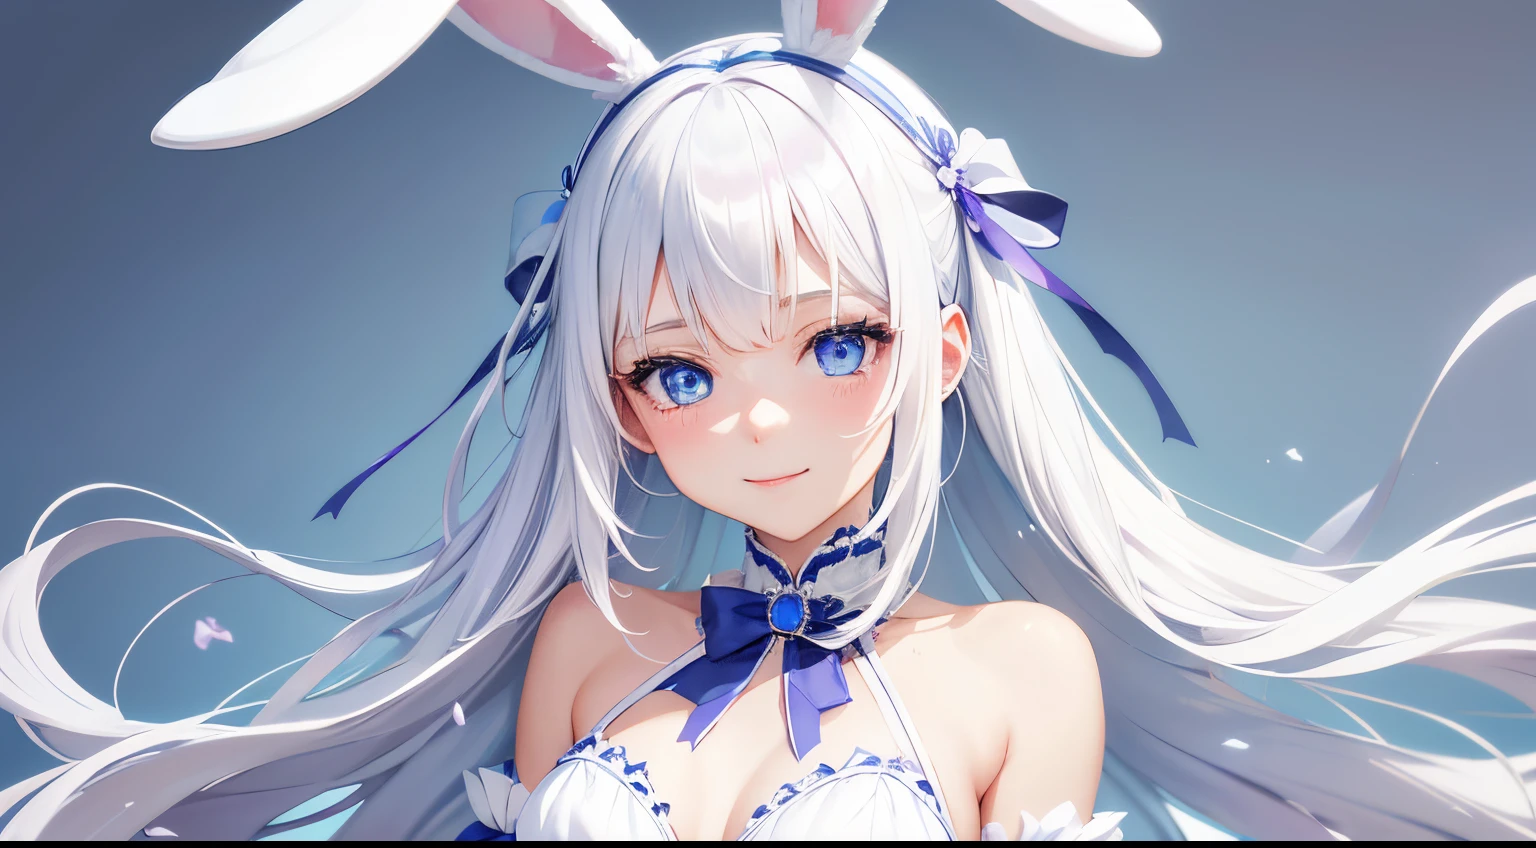 最好的品質, 細節, 淺藍色的眼睛!, 用白色兔子耳朵帶讓可愛的白髮22歲女孩微笑, 直髮, SFW 小胸, 柔和的紫羅蘭背景